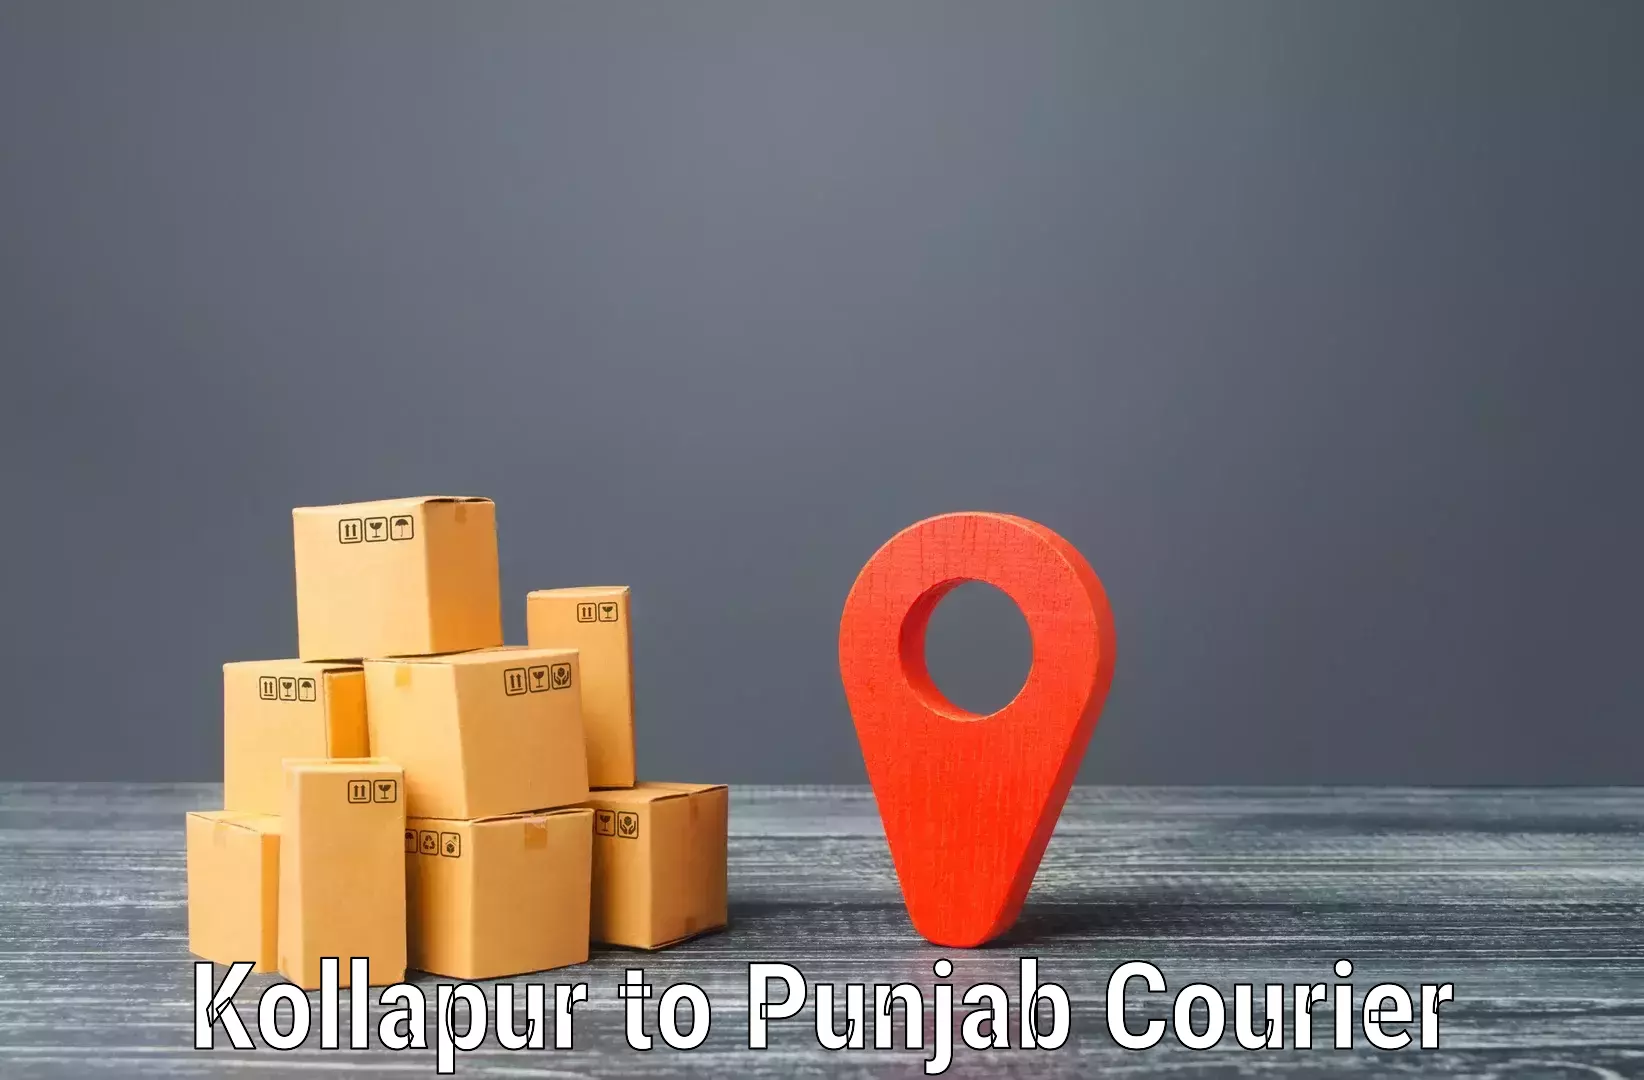 Multi-city courier Kollapur to Dasuya